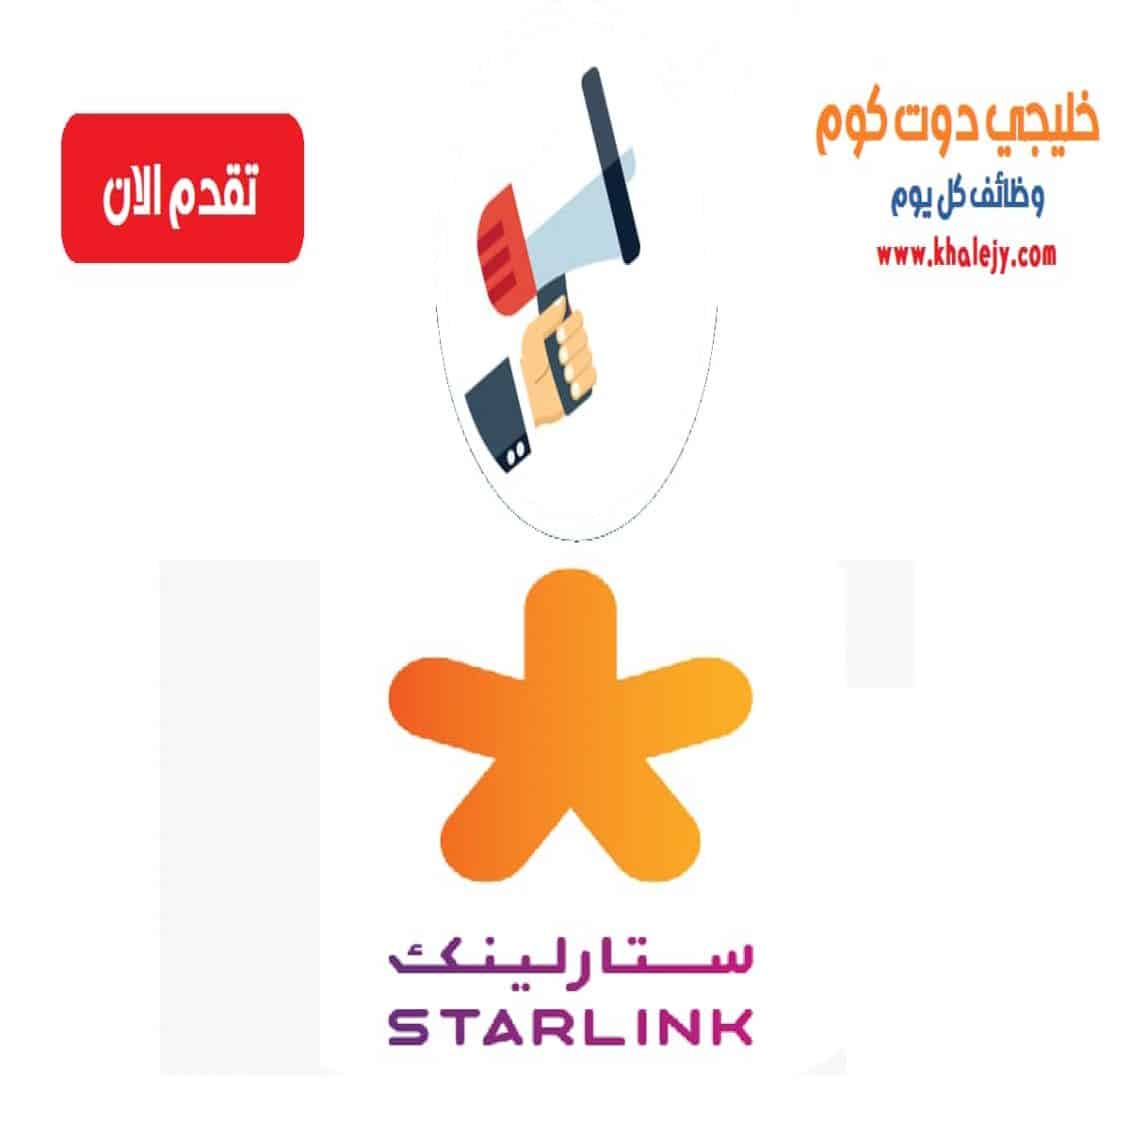 وظائف شركة ستارلينك قطر للمواطنين والاجانب